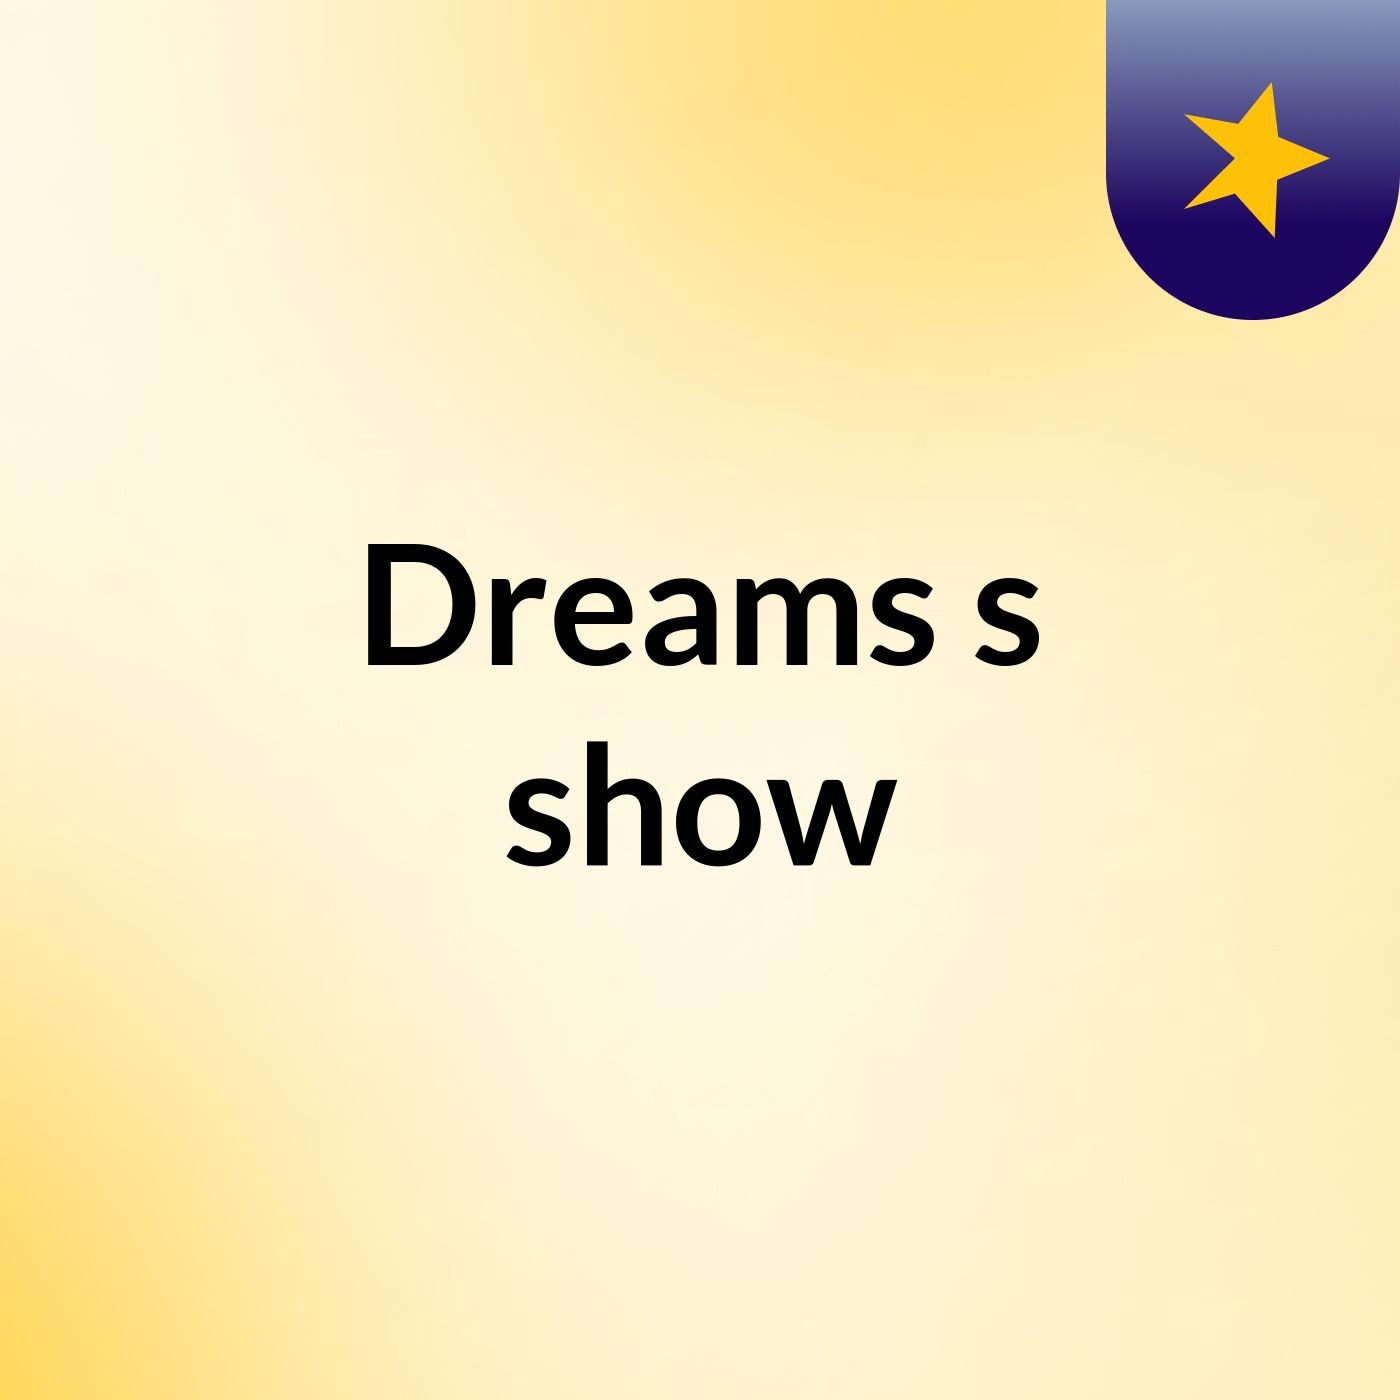 Dreams's show